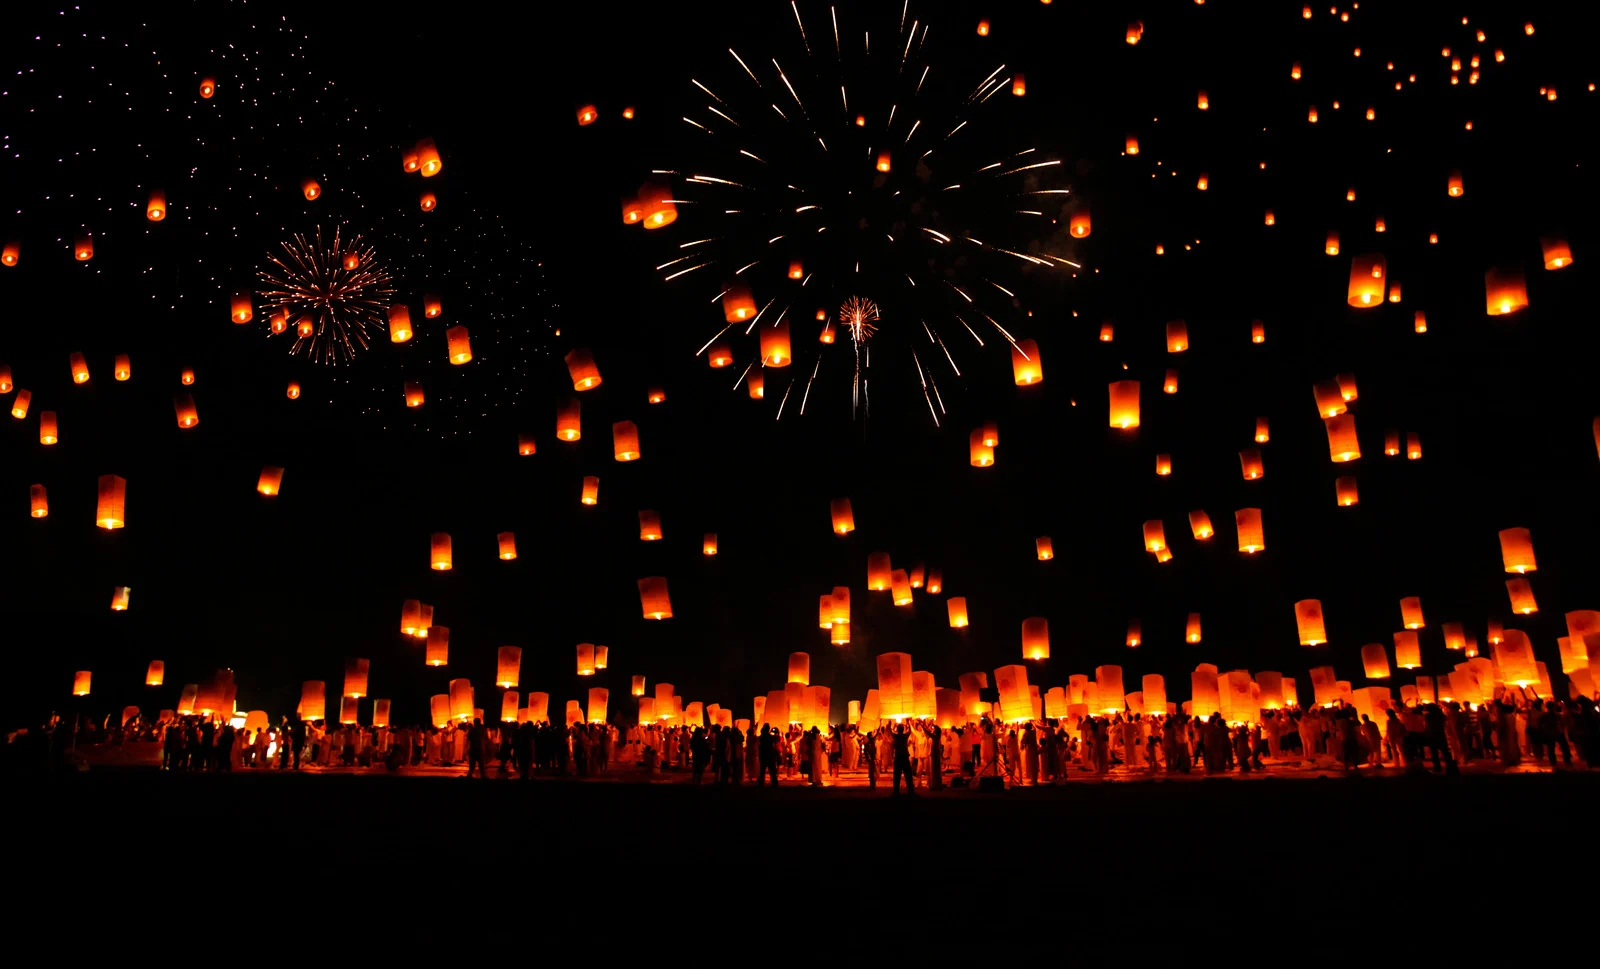 Lễ hội thả đèn trời Yi Peng được trông đợi nhất trong năm ở Chiang Mai